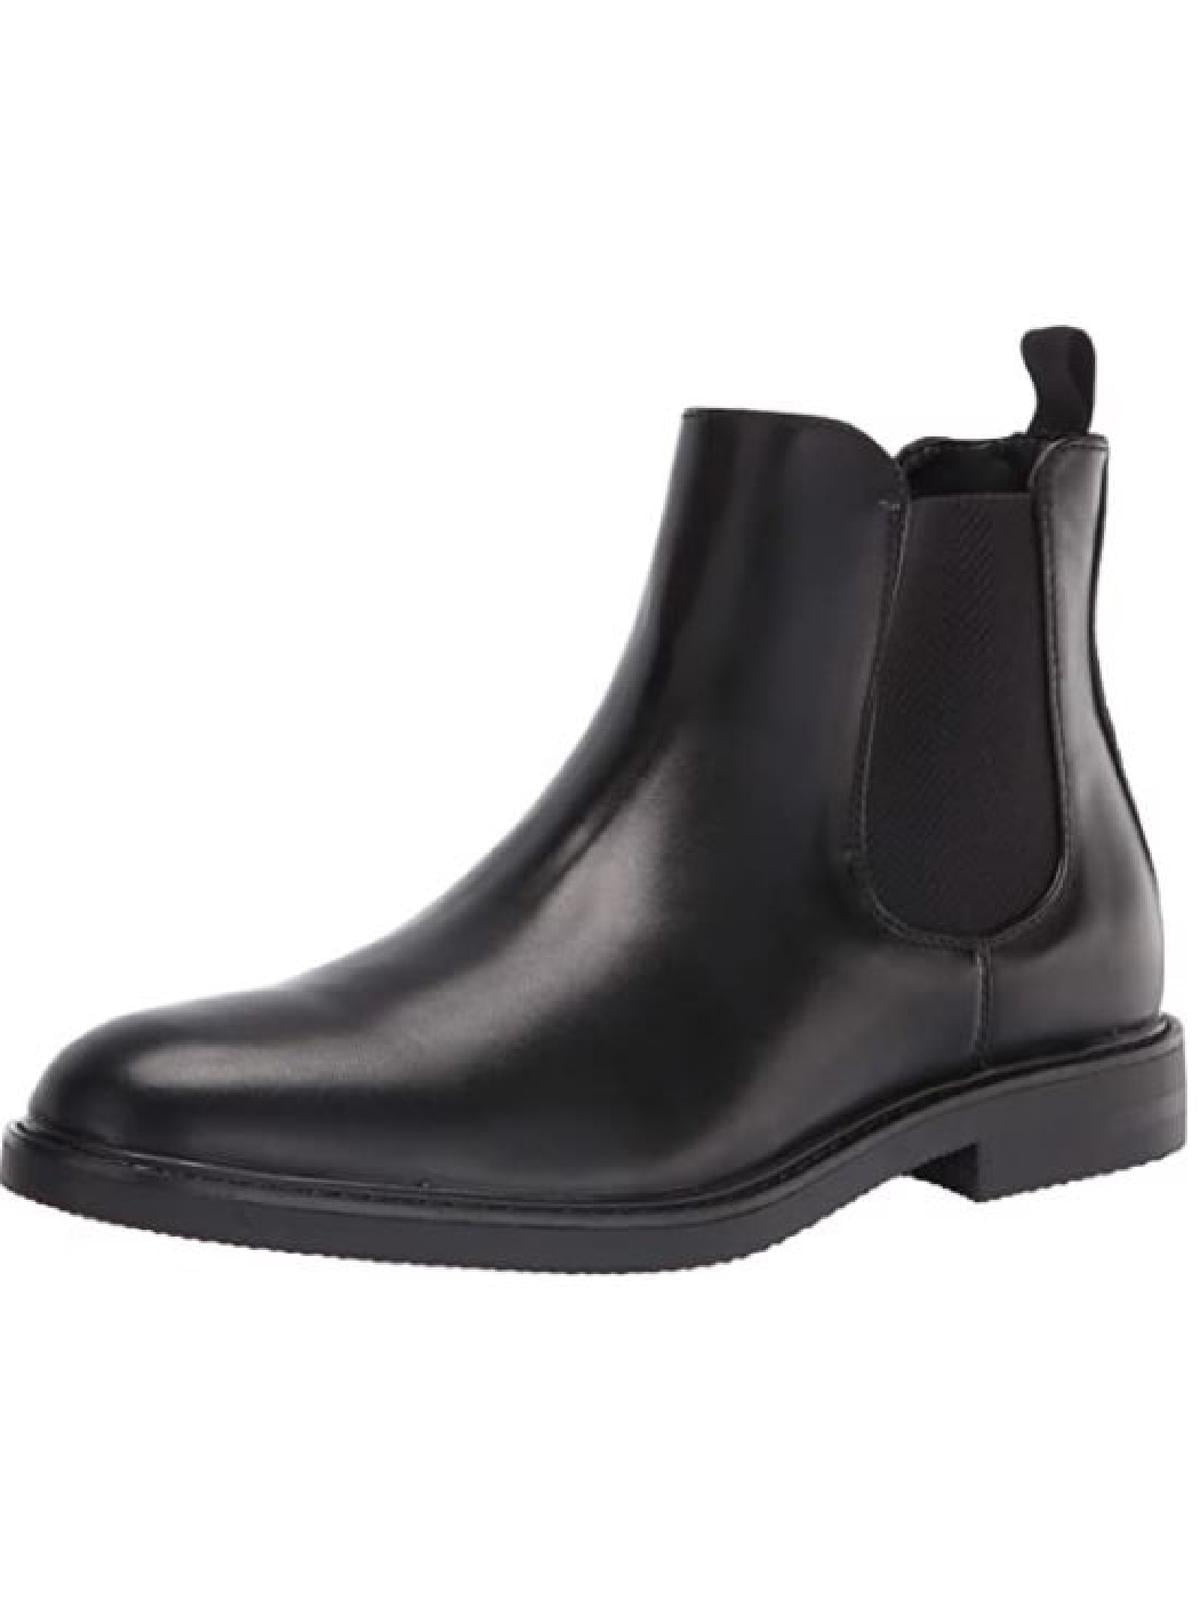 Chelsea Boots - Black/faux leather - Men